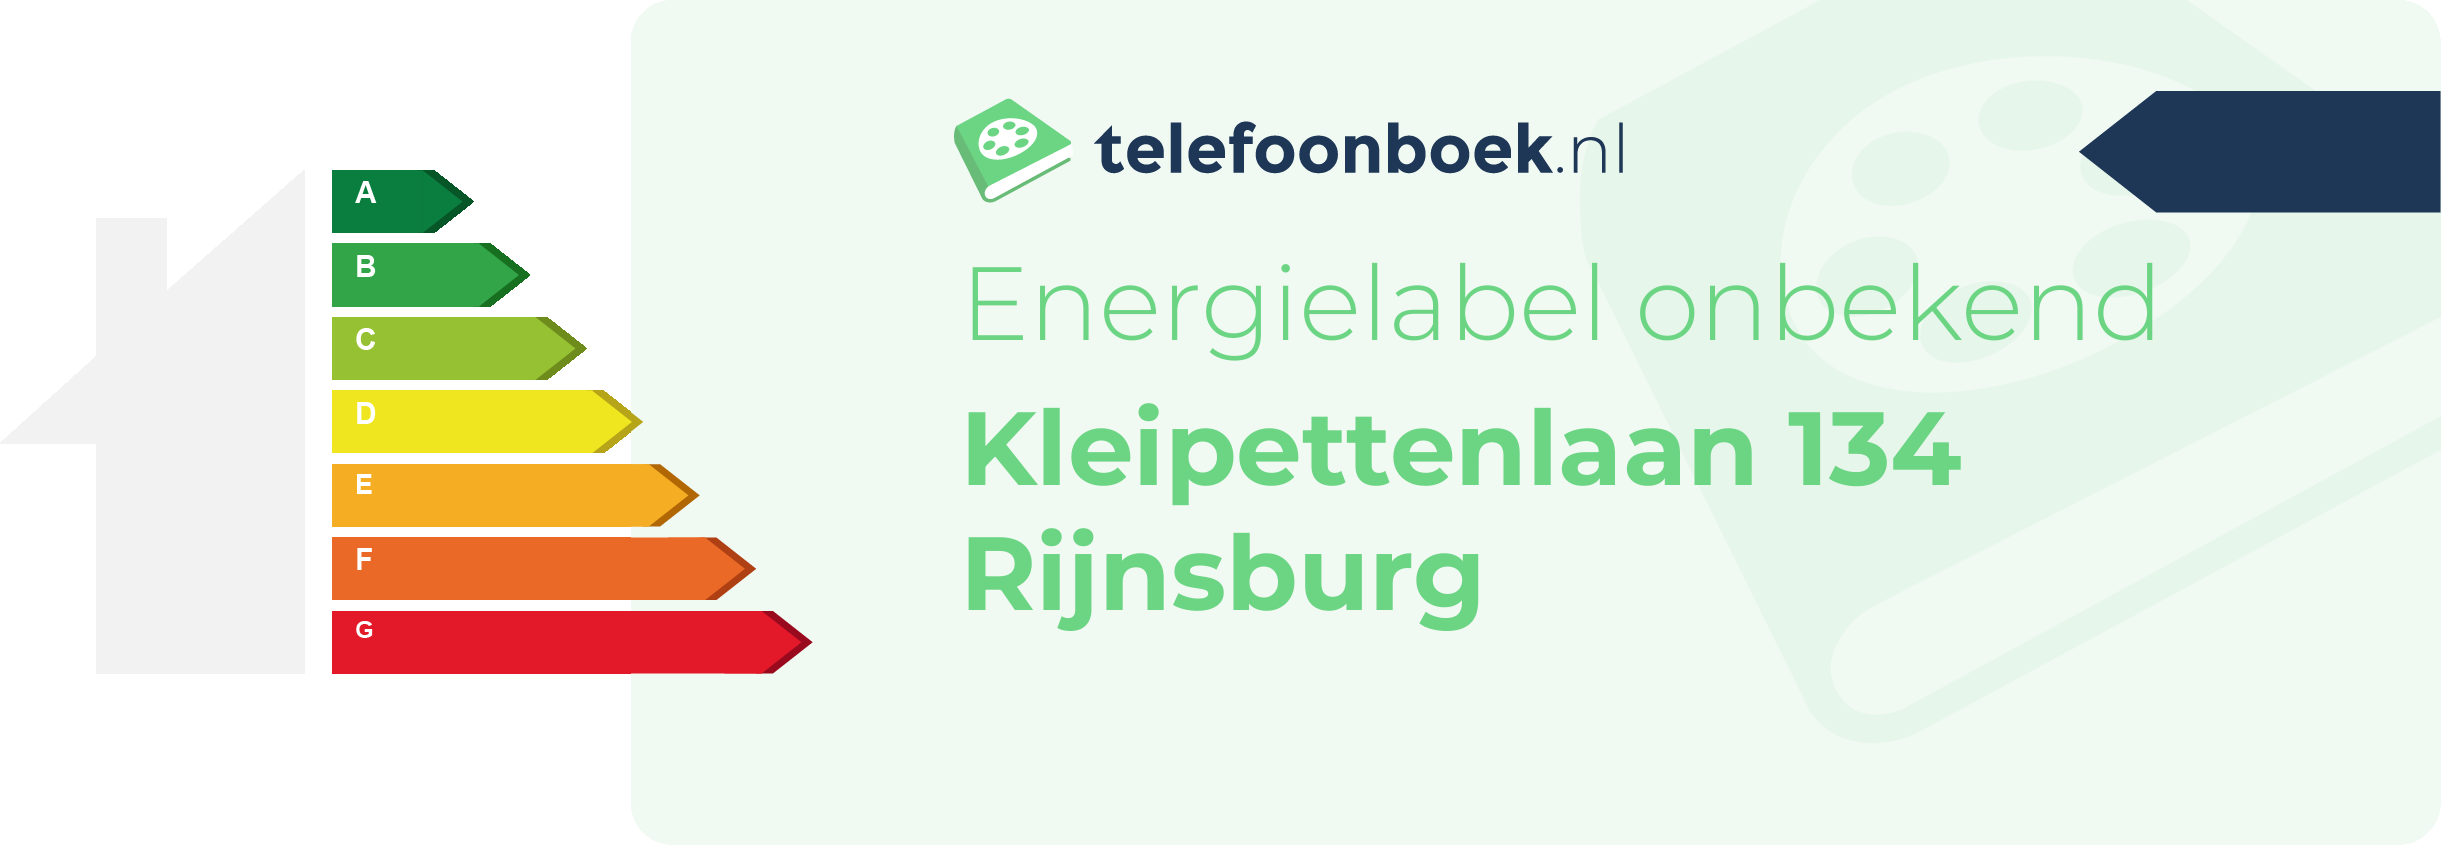 Energielabel Kleipettenlaan 134 Rijnsburg